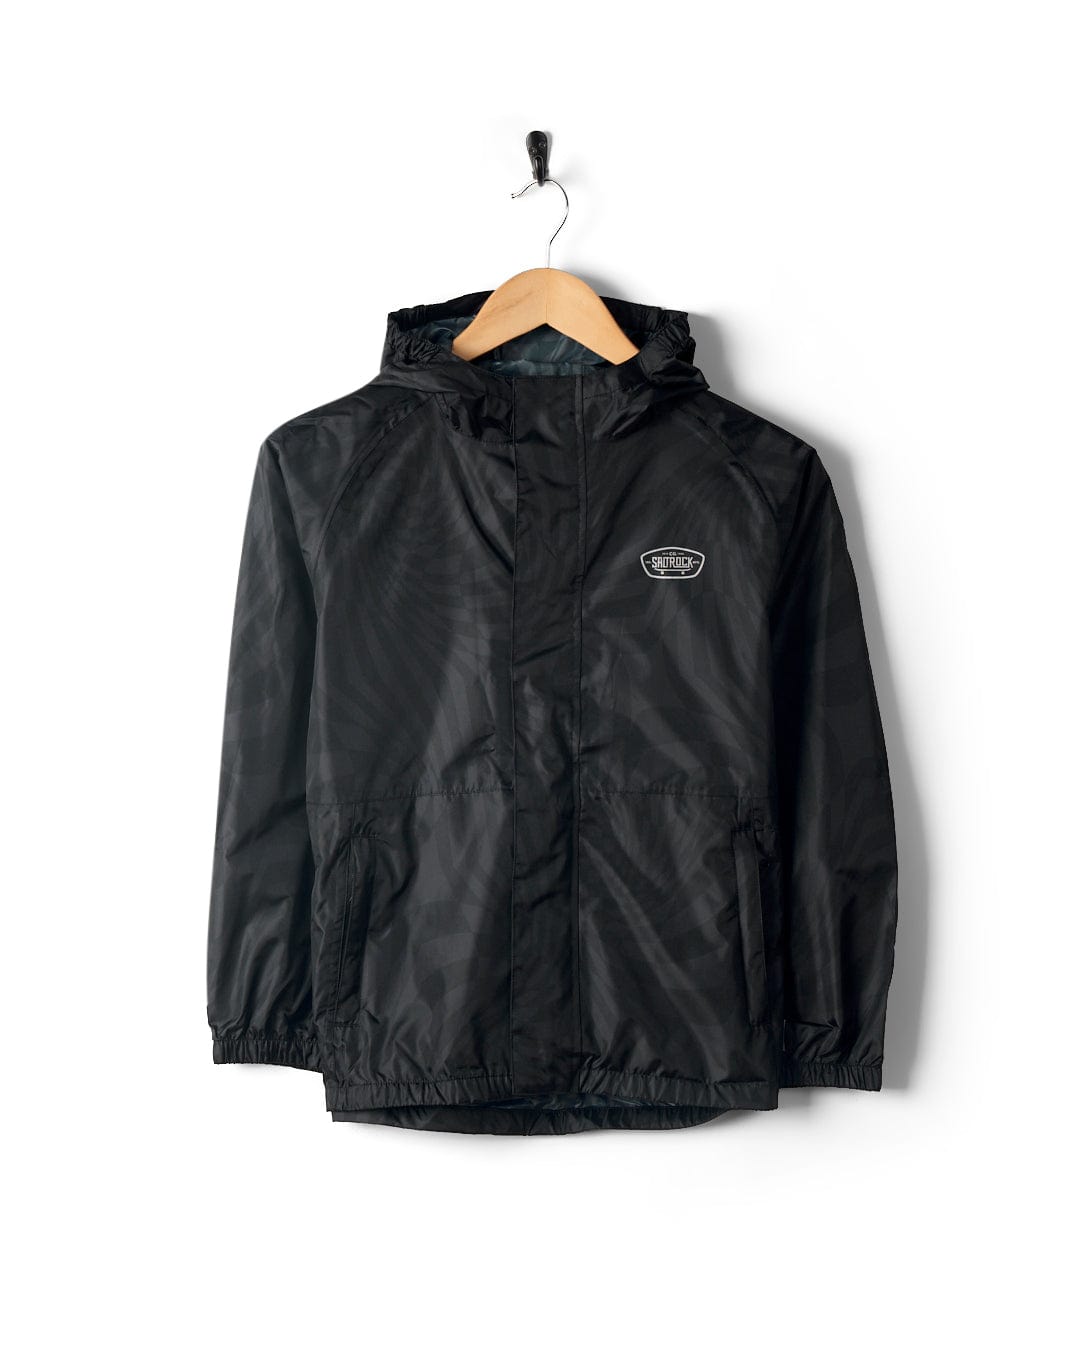 Warped - Kids Waterproof Packable Jacket - Black, Black / 11/12